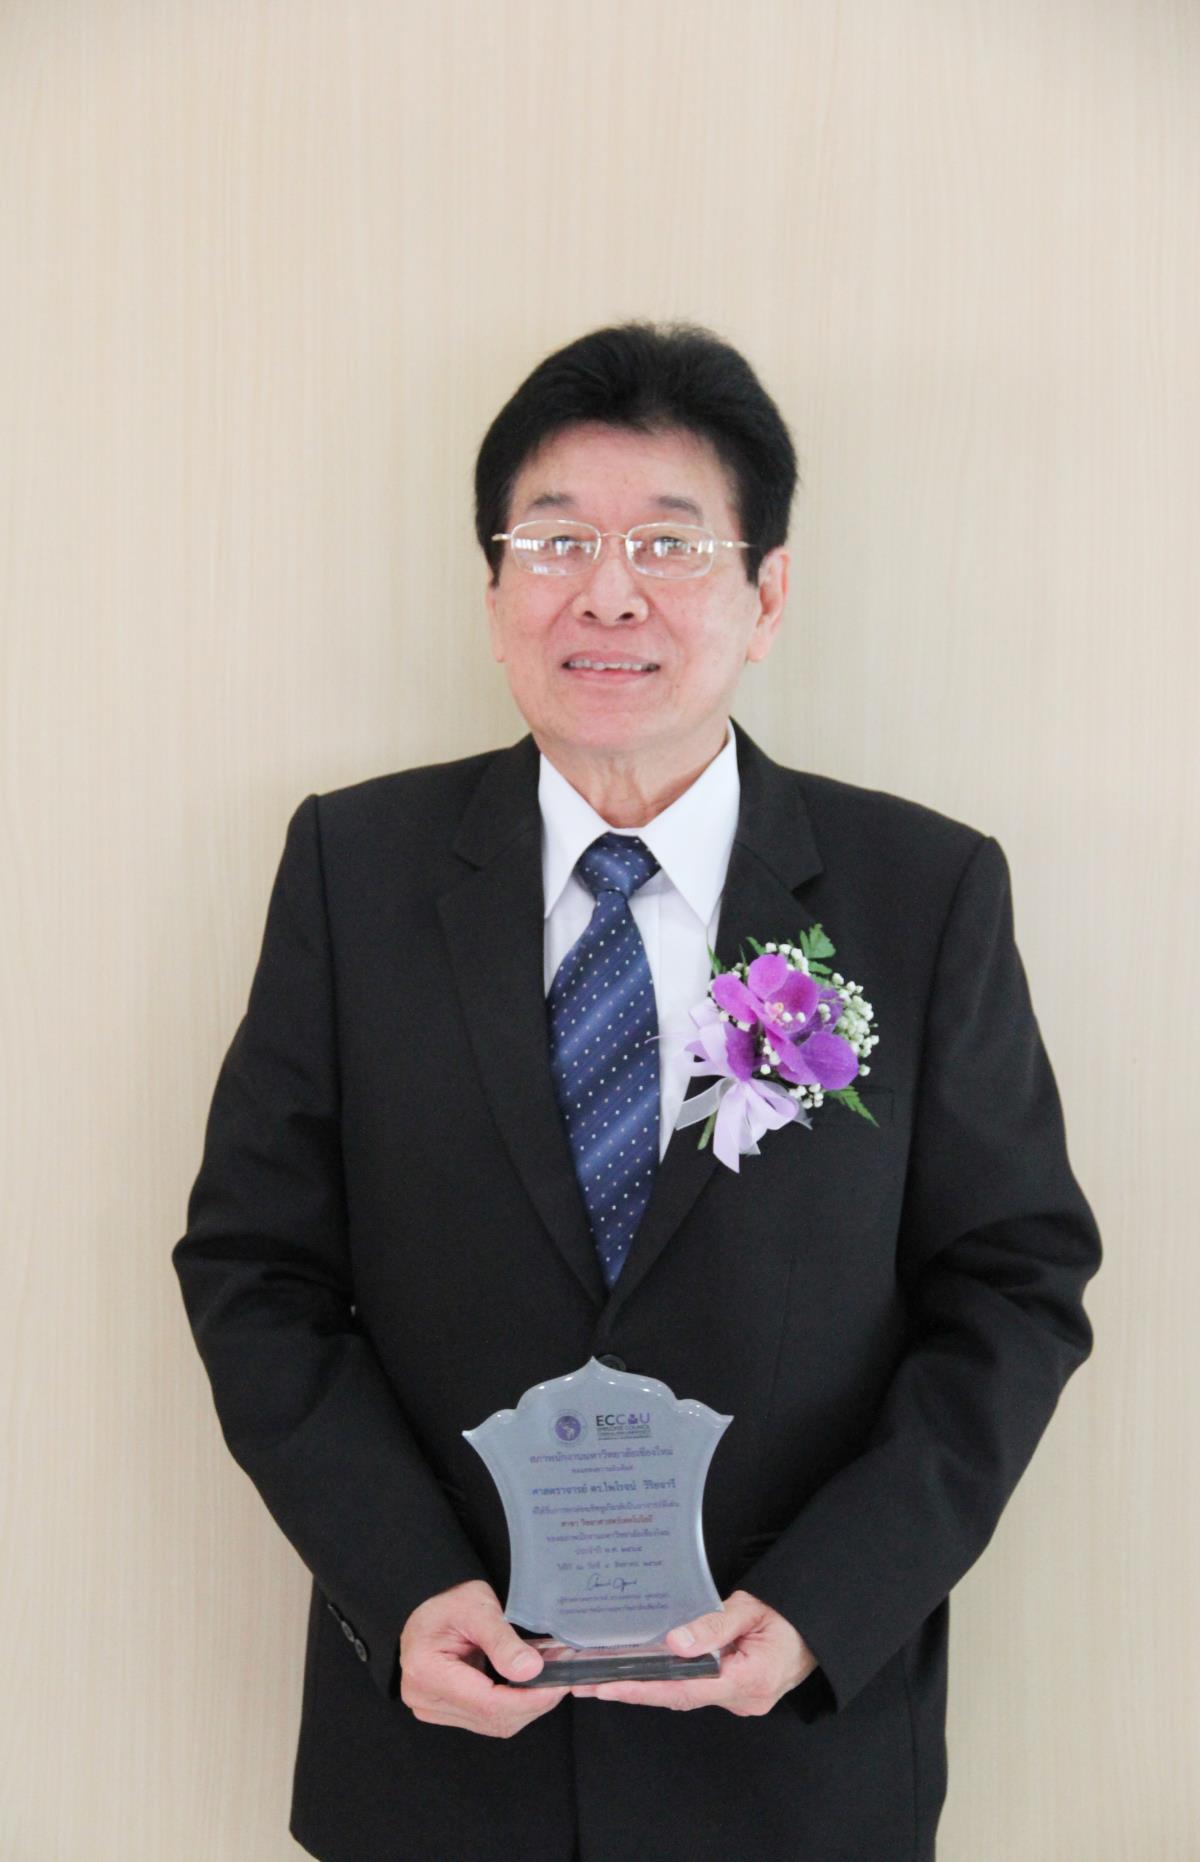 ศาสตราจารย์ ดร.ไพโรจน์ วิริยจารี เข้ารับรางวัล อาจารย์ดีเด่นของสภาพนักงานมหาวิทยาลัยเชียงใหม่ ประจำปี 2565